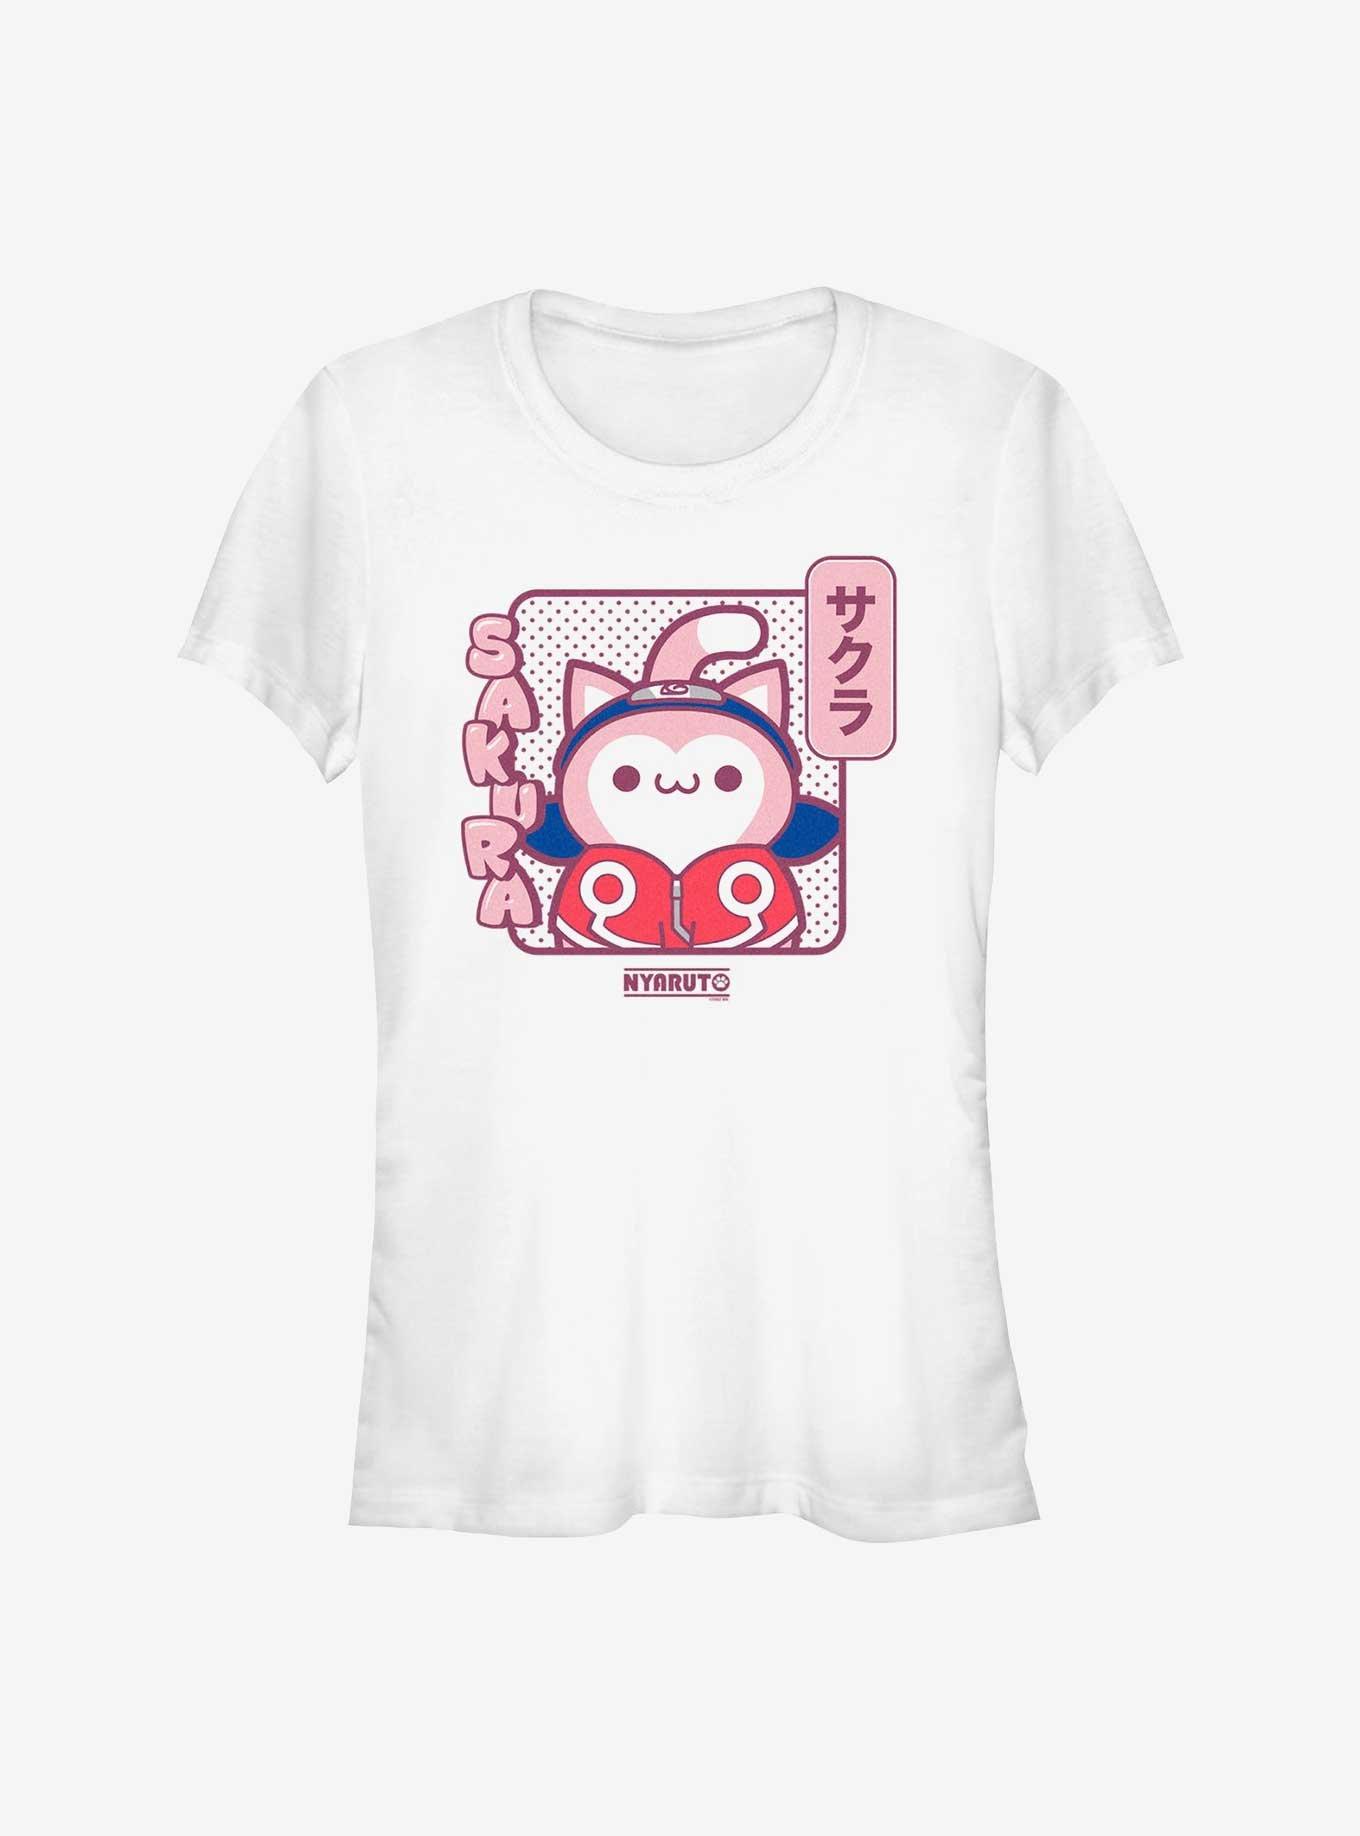 Naruto Sakura Cat Girls T-Shirt